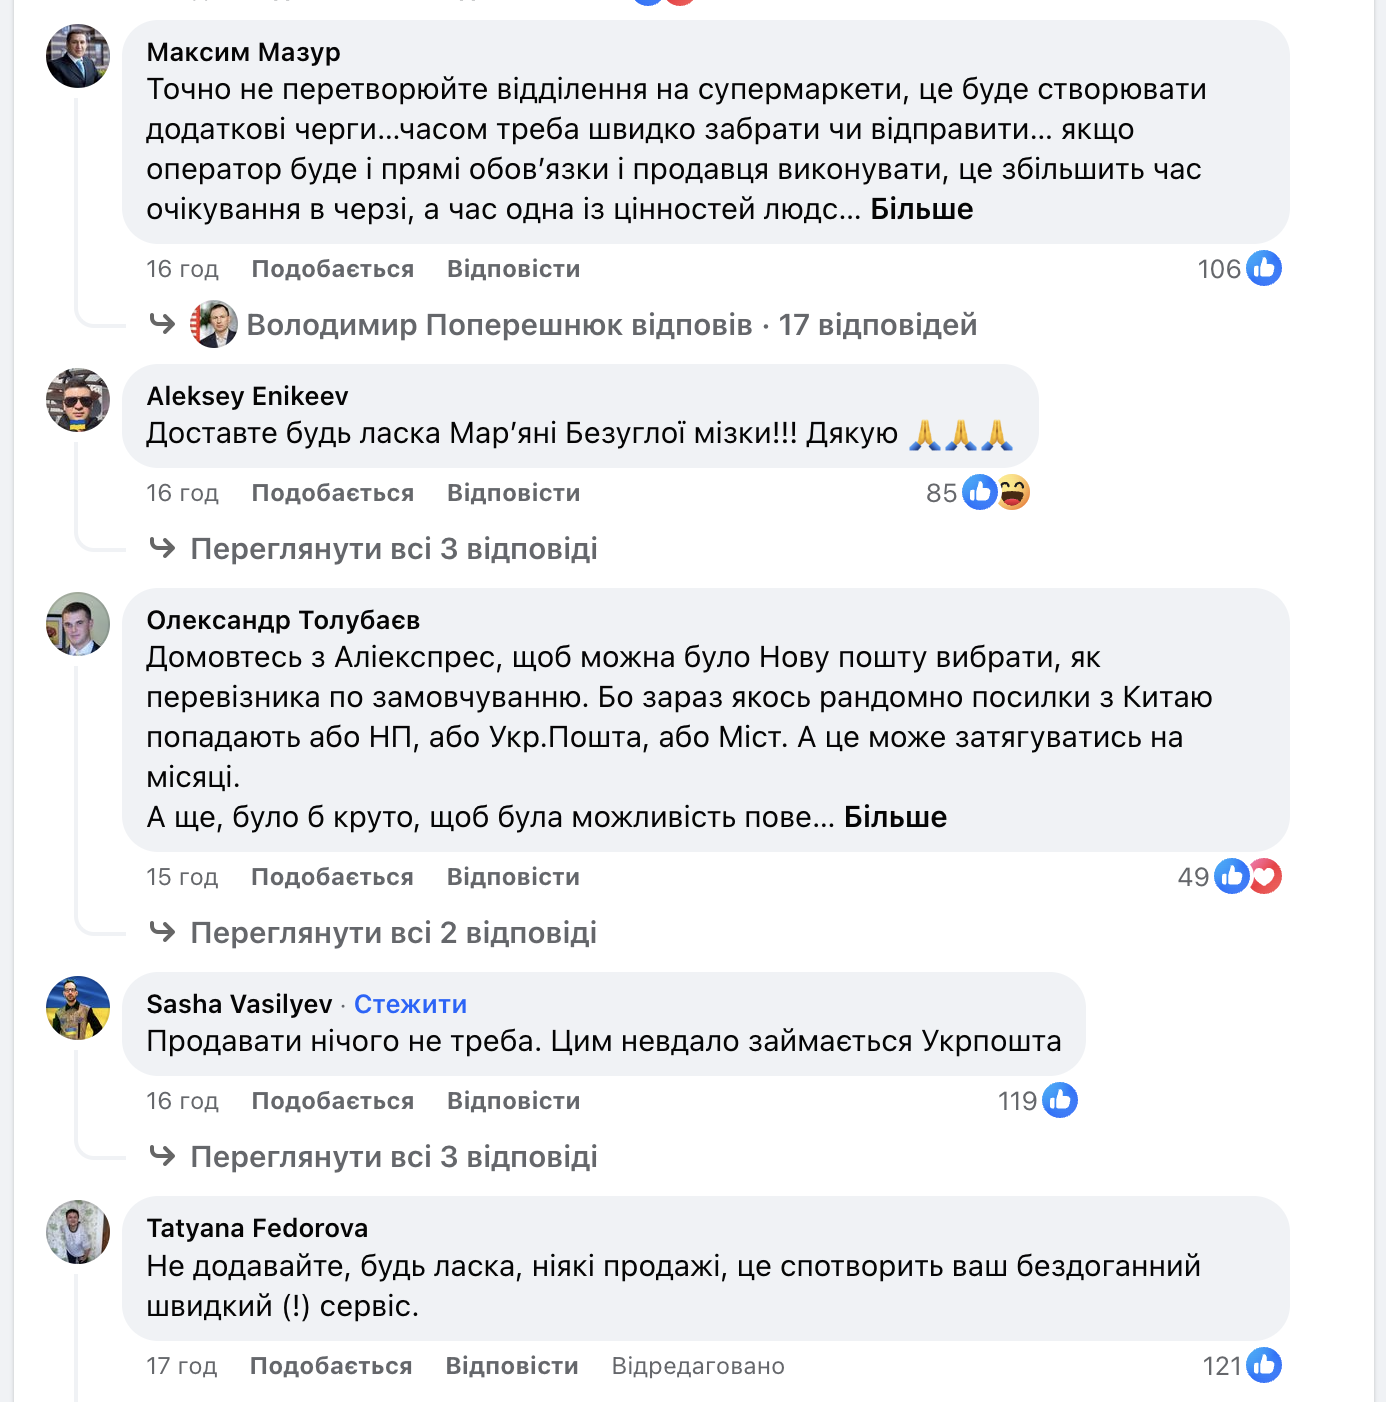 Володимир Поперешнюк у Facebook